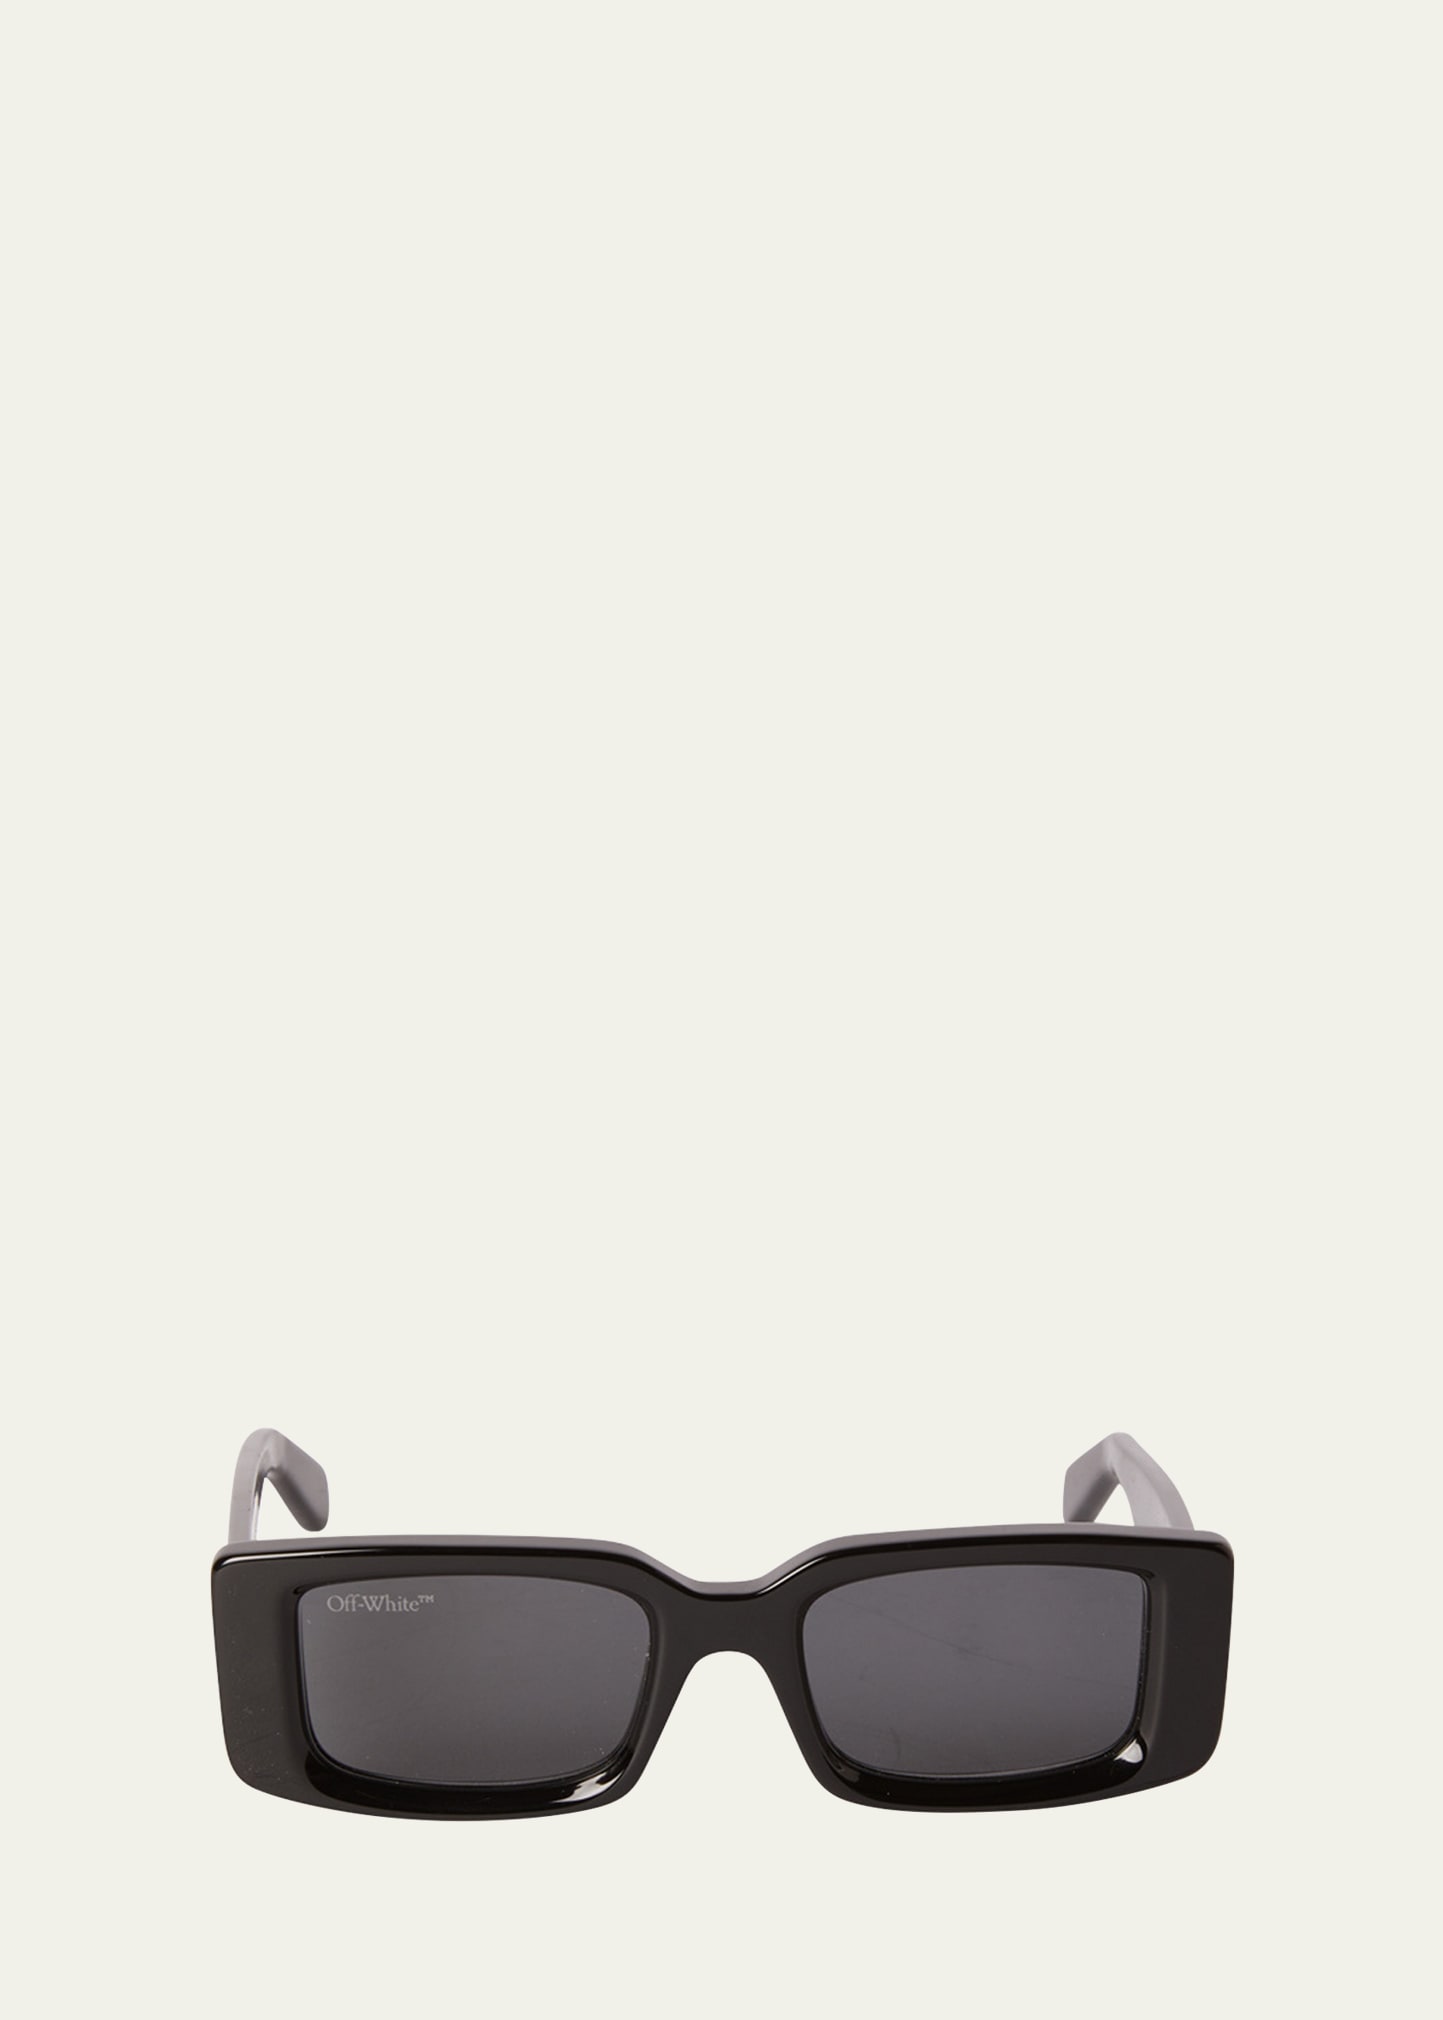 Off-White Men's Arthur Rectangle Sunglasses, Black/Dark Grey, Men's, Sunglasses Square Sunglasses